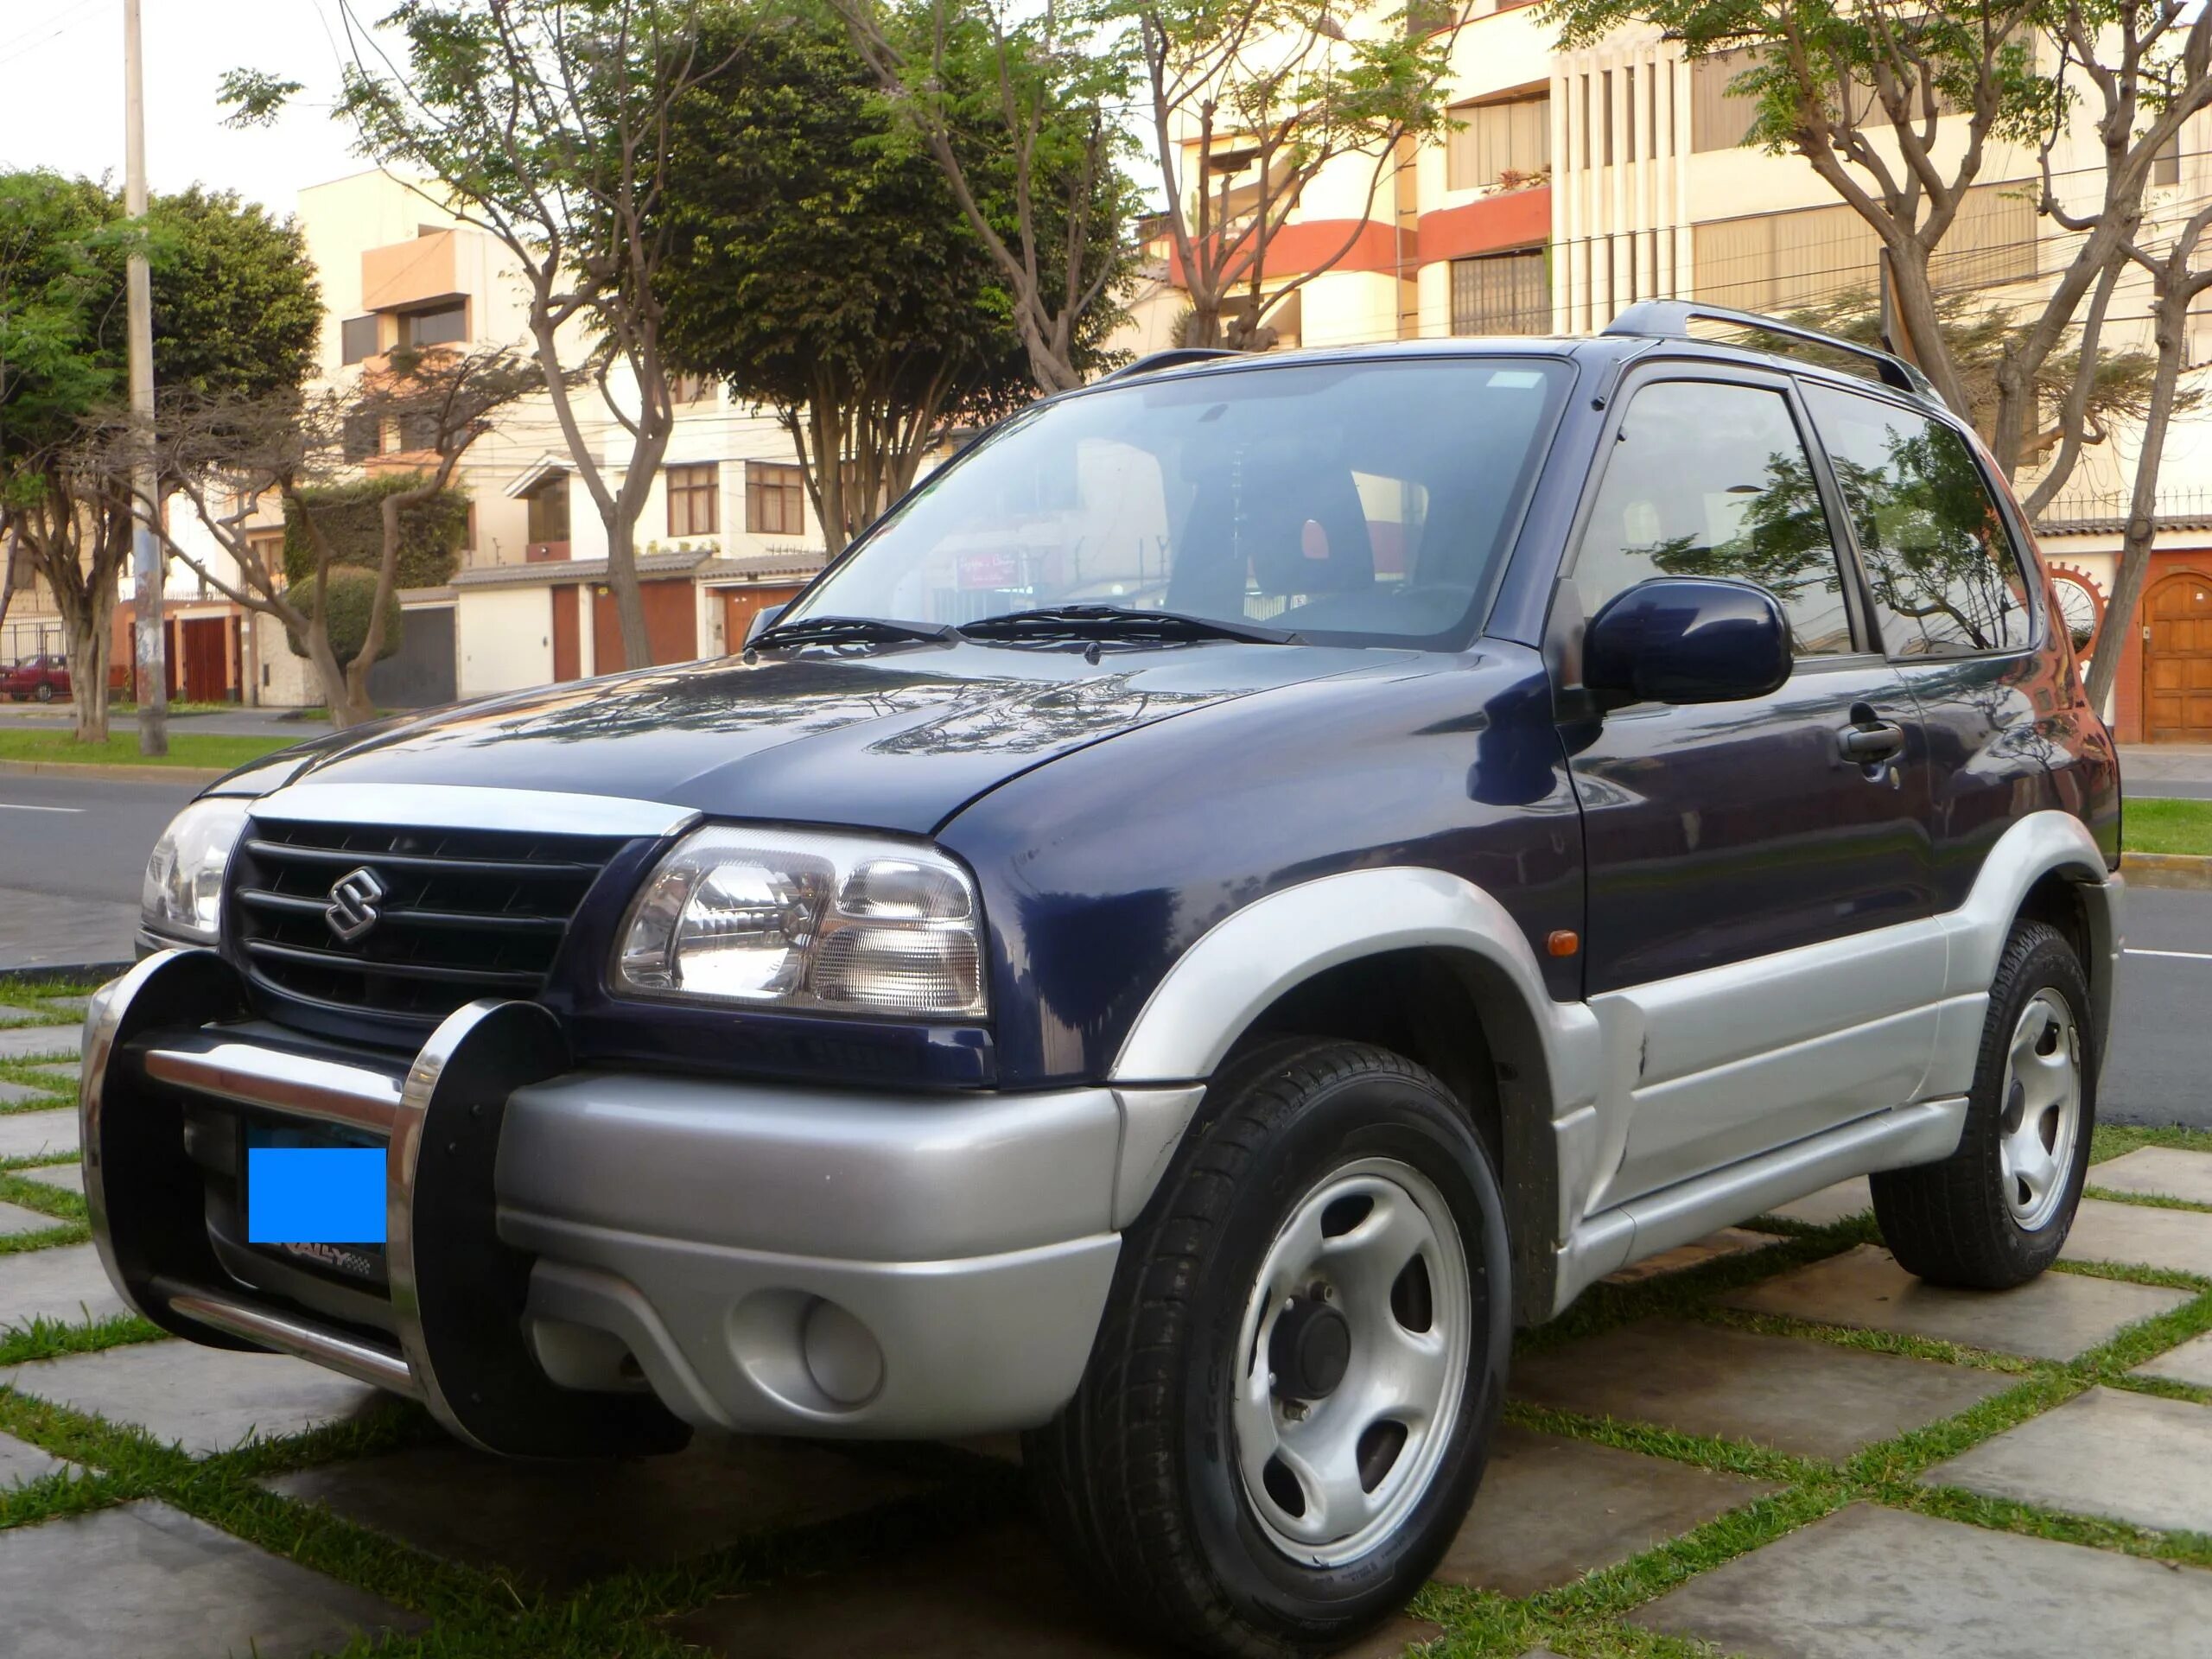 Suzuki grand vitara 2000 год. Suzuki Grand Vitara 2004. Suzuki Grand Vitara 2002. Suzuki Grand Vitara 2003. Сузуки Grand Vitara 2002.